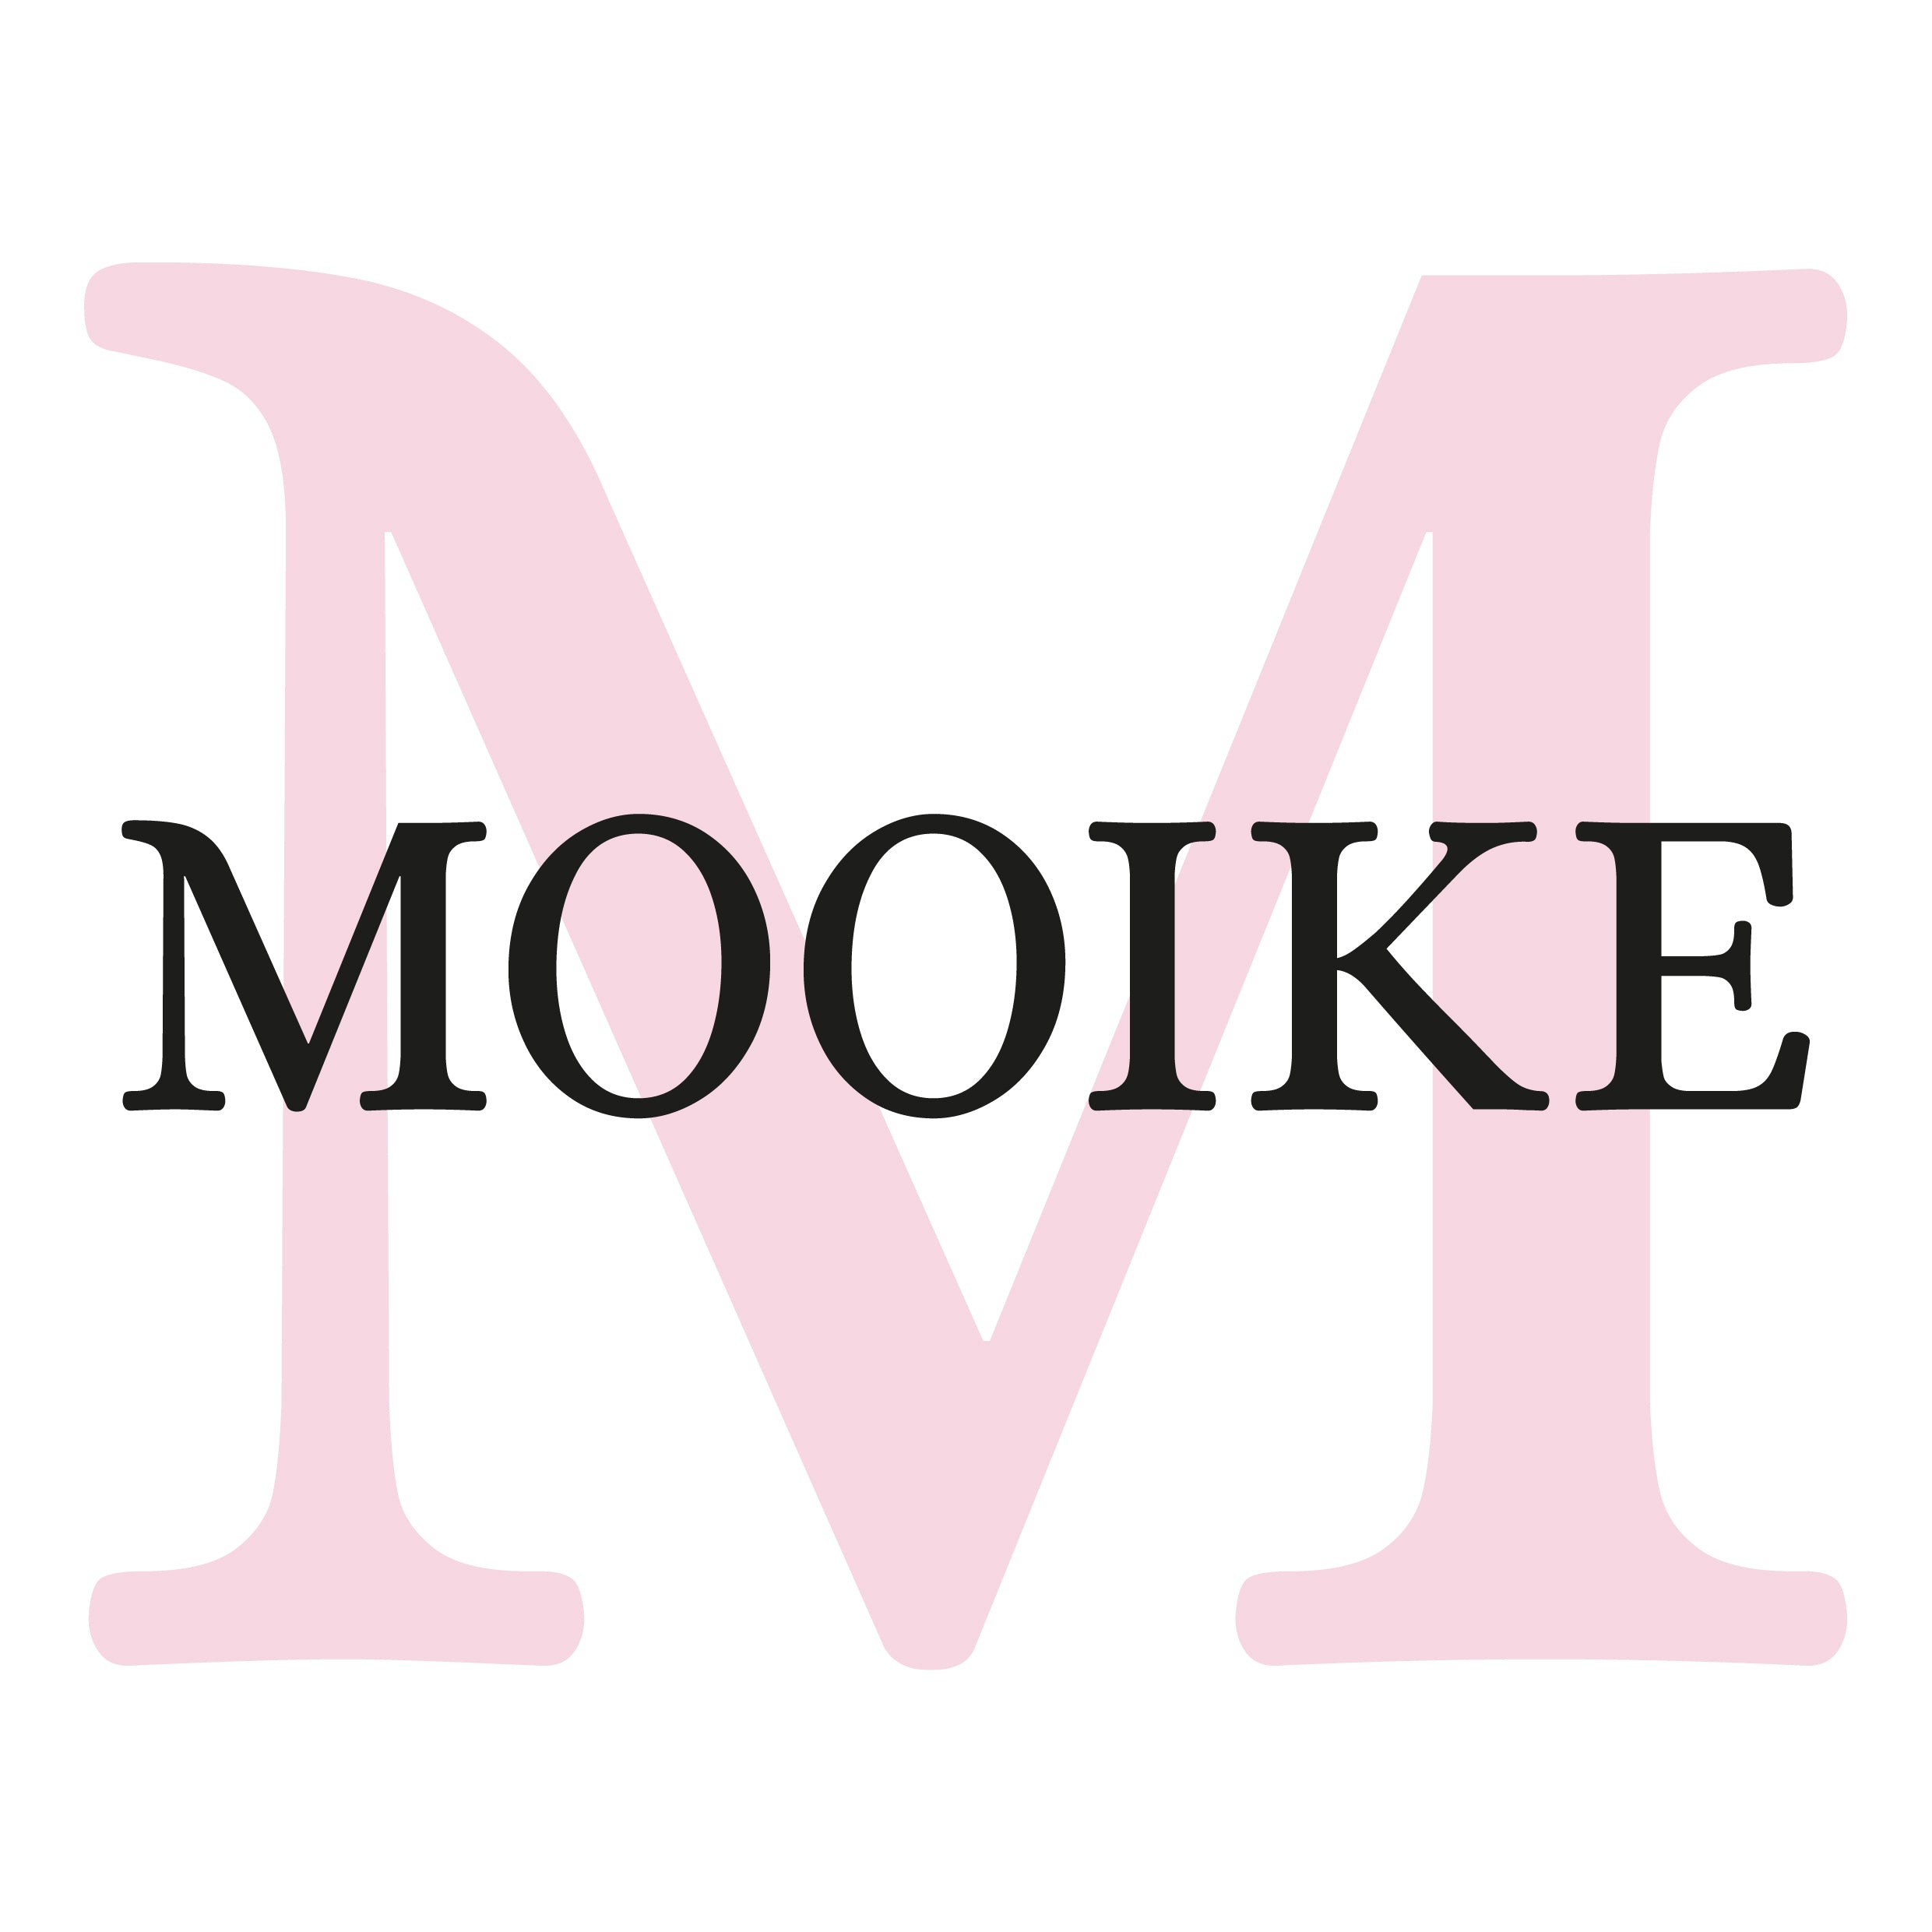 MOOIKE – Mooike